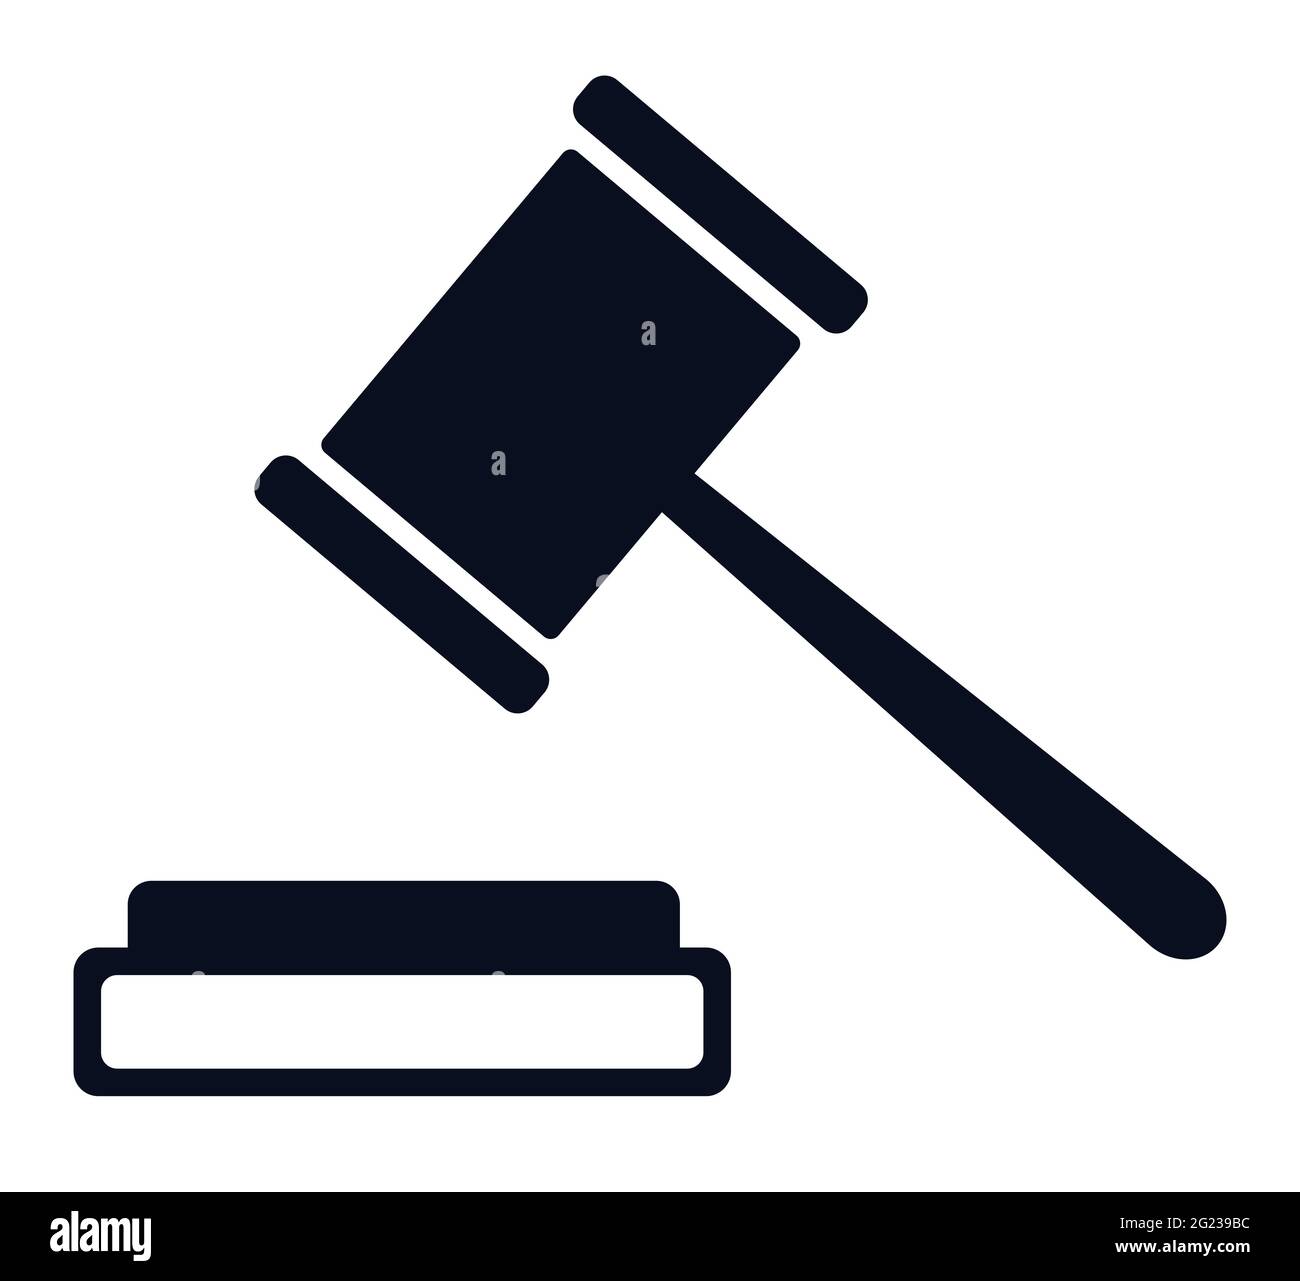 Un tribunale giudice o giustizia gavel vettore icona e martello simbolo Illustrazione Vettoriale